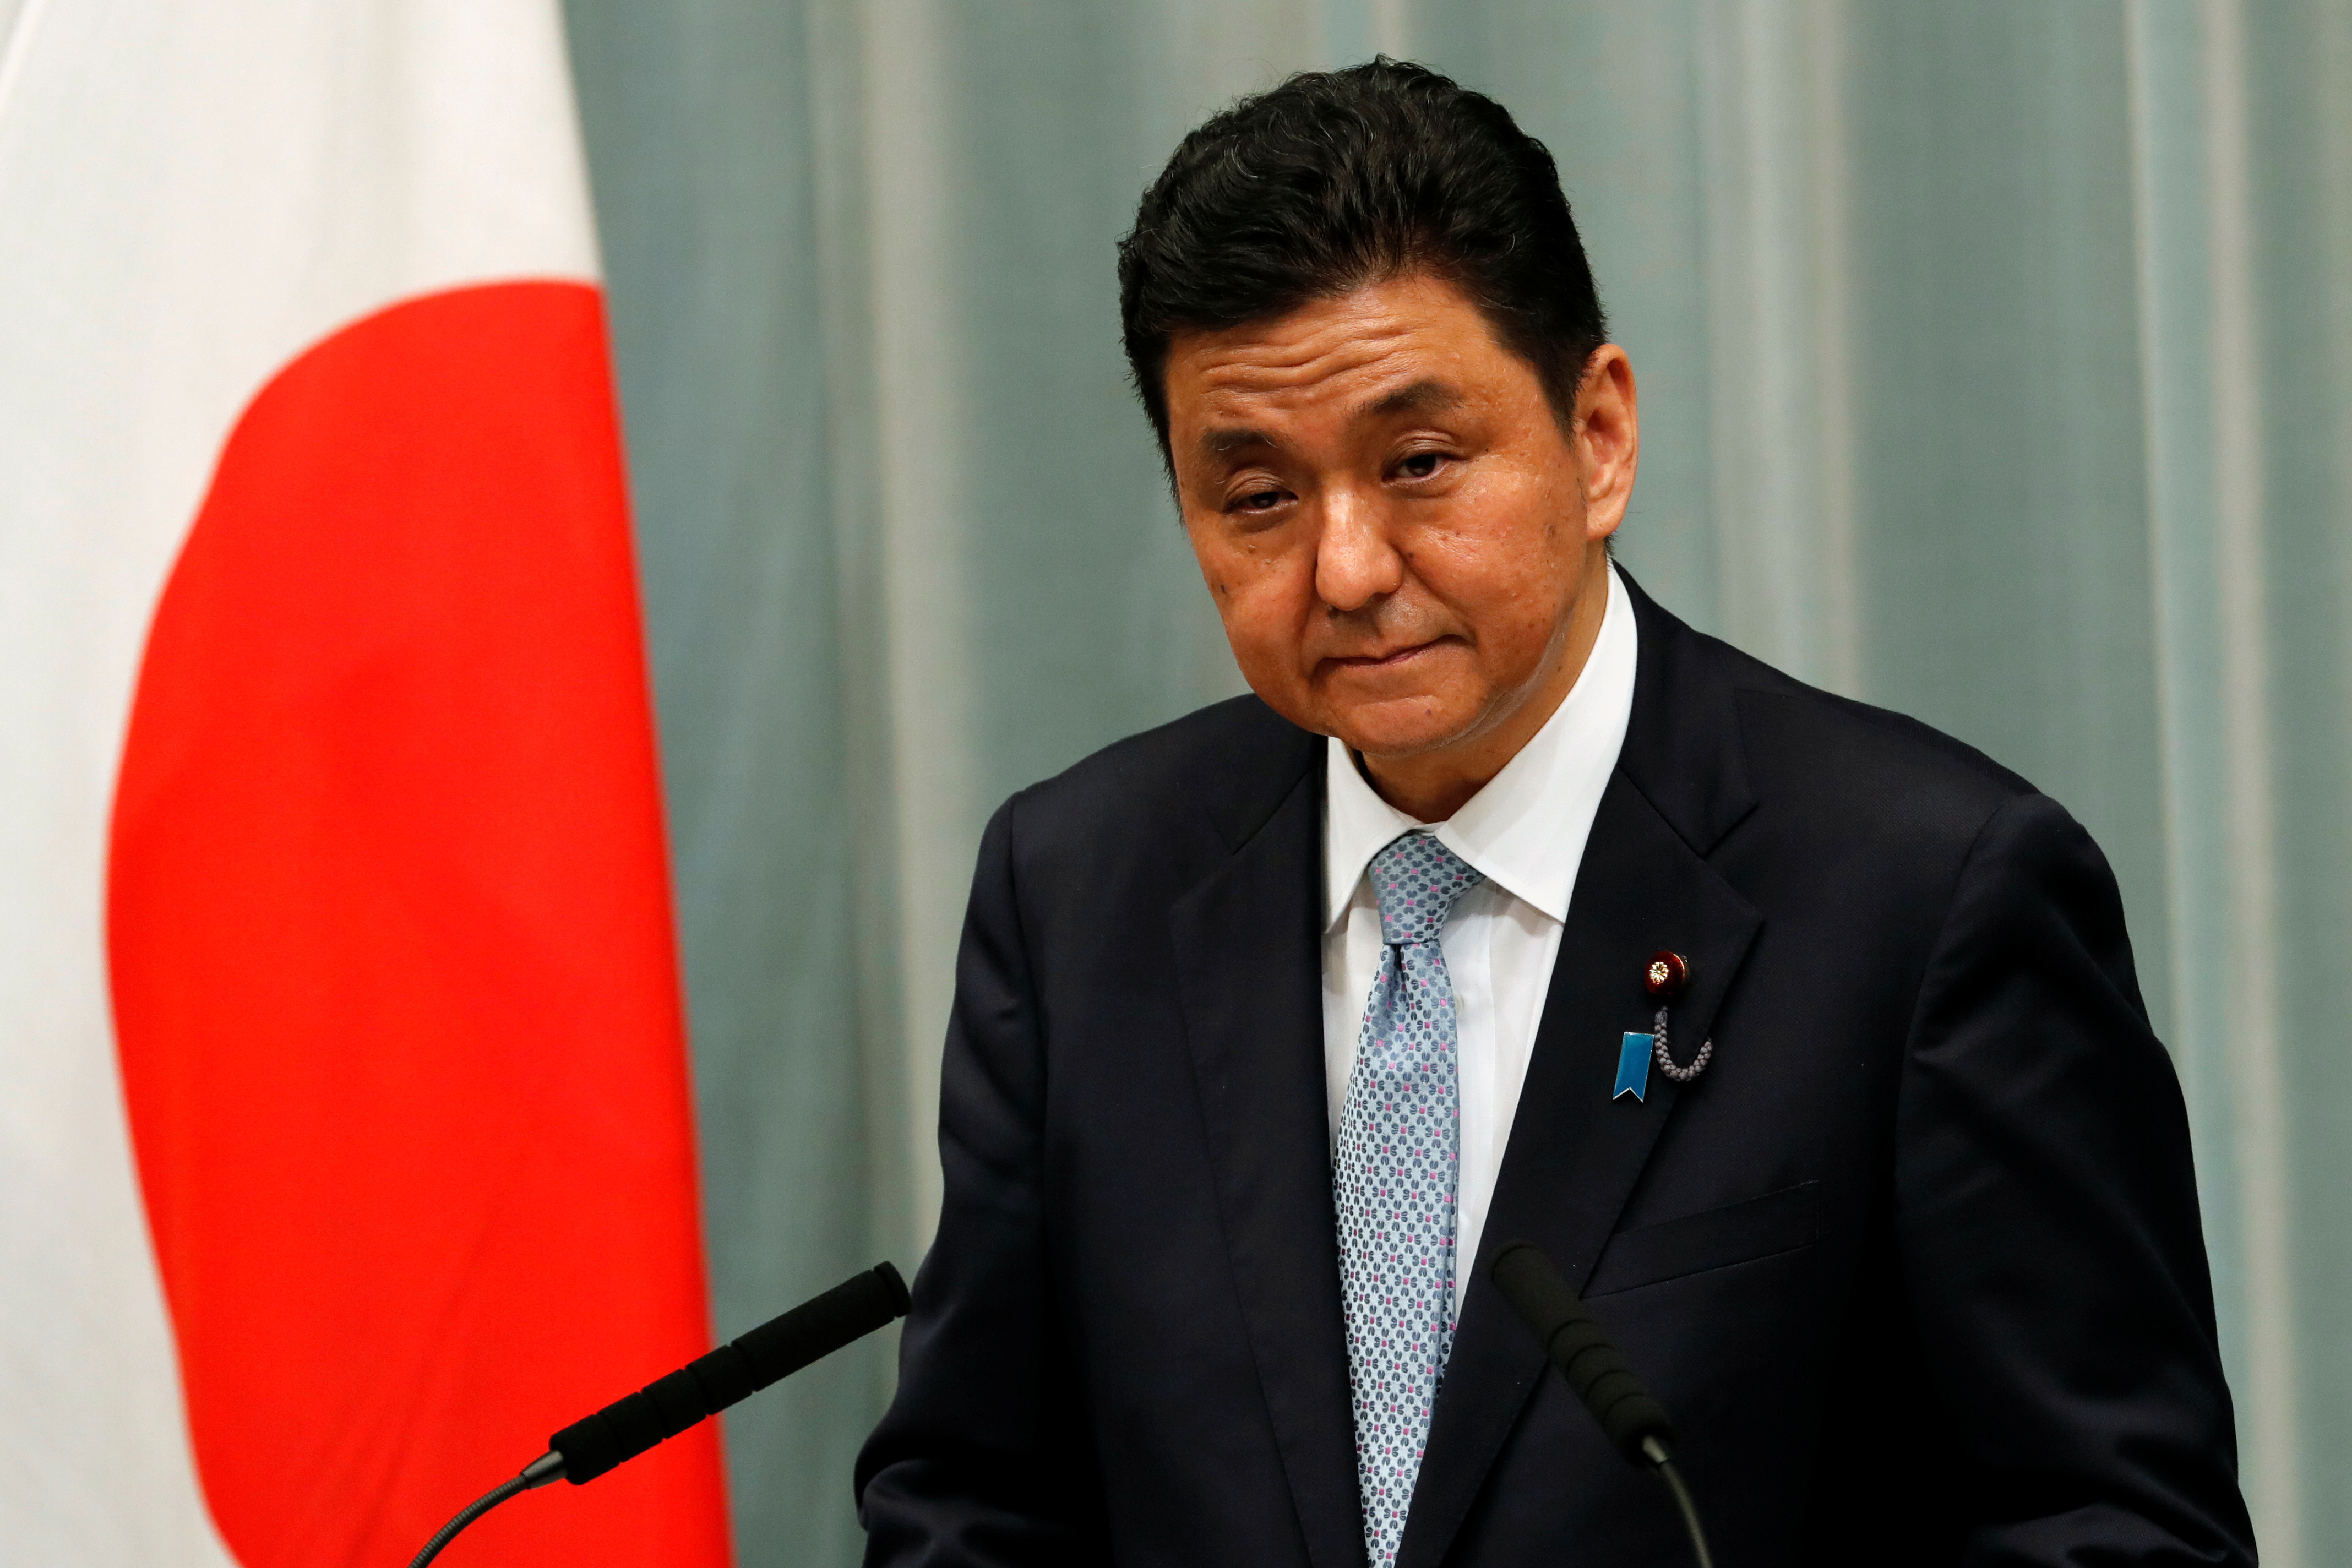 El ministro de Defensa de Japón, Nobuo Kishi, asiste a una conferencia de prensa en Tokio, Japón (Reuters)